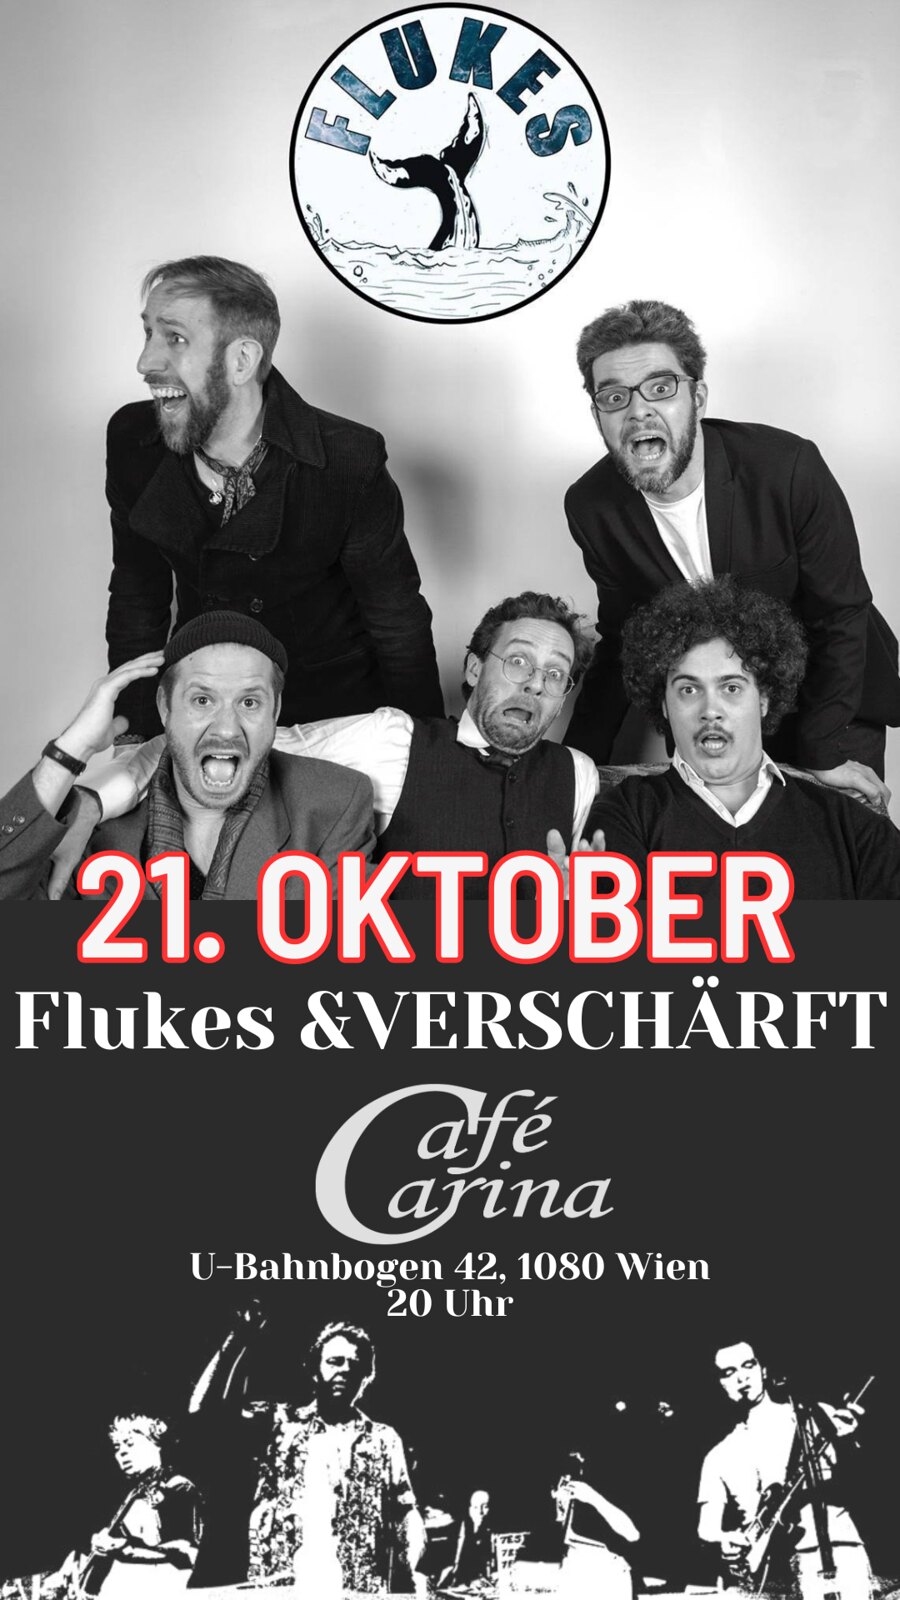 FLUKES & VERSCHÄRFT am 21. October 2023 @ Café Carina.